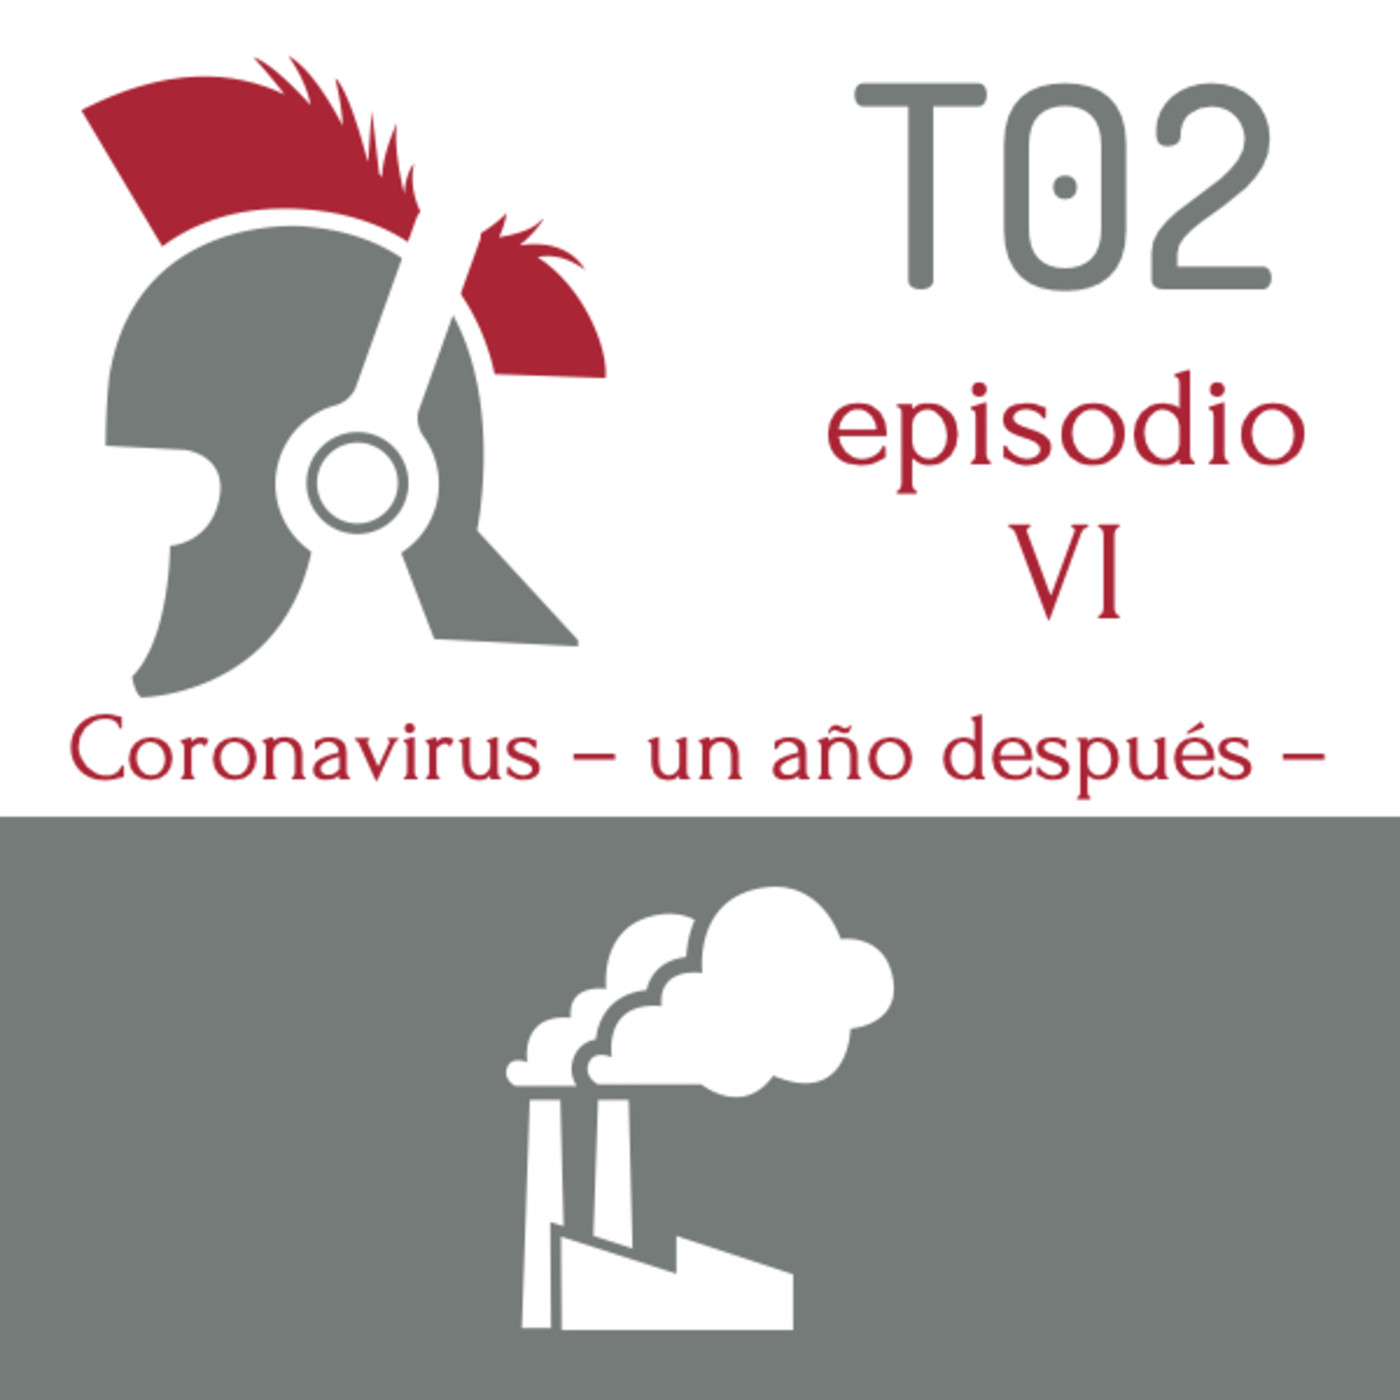 Coronavirus -2021- un año después